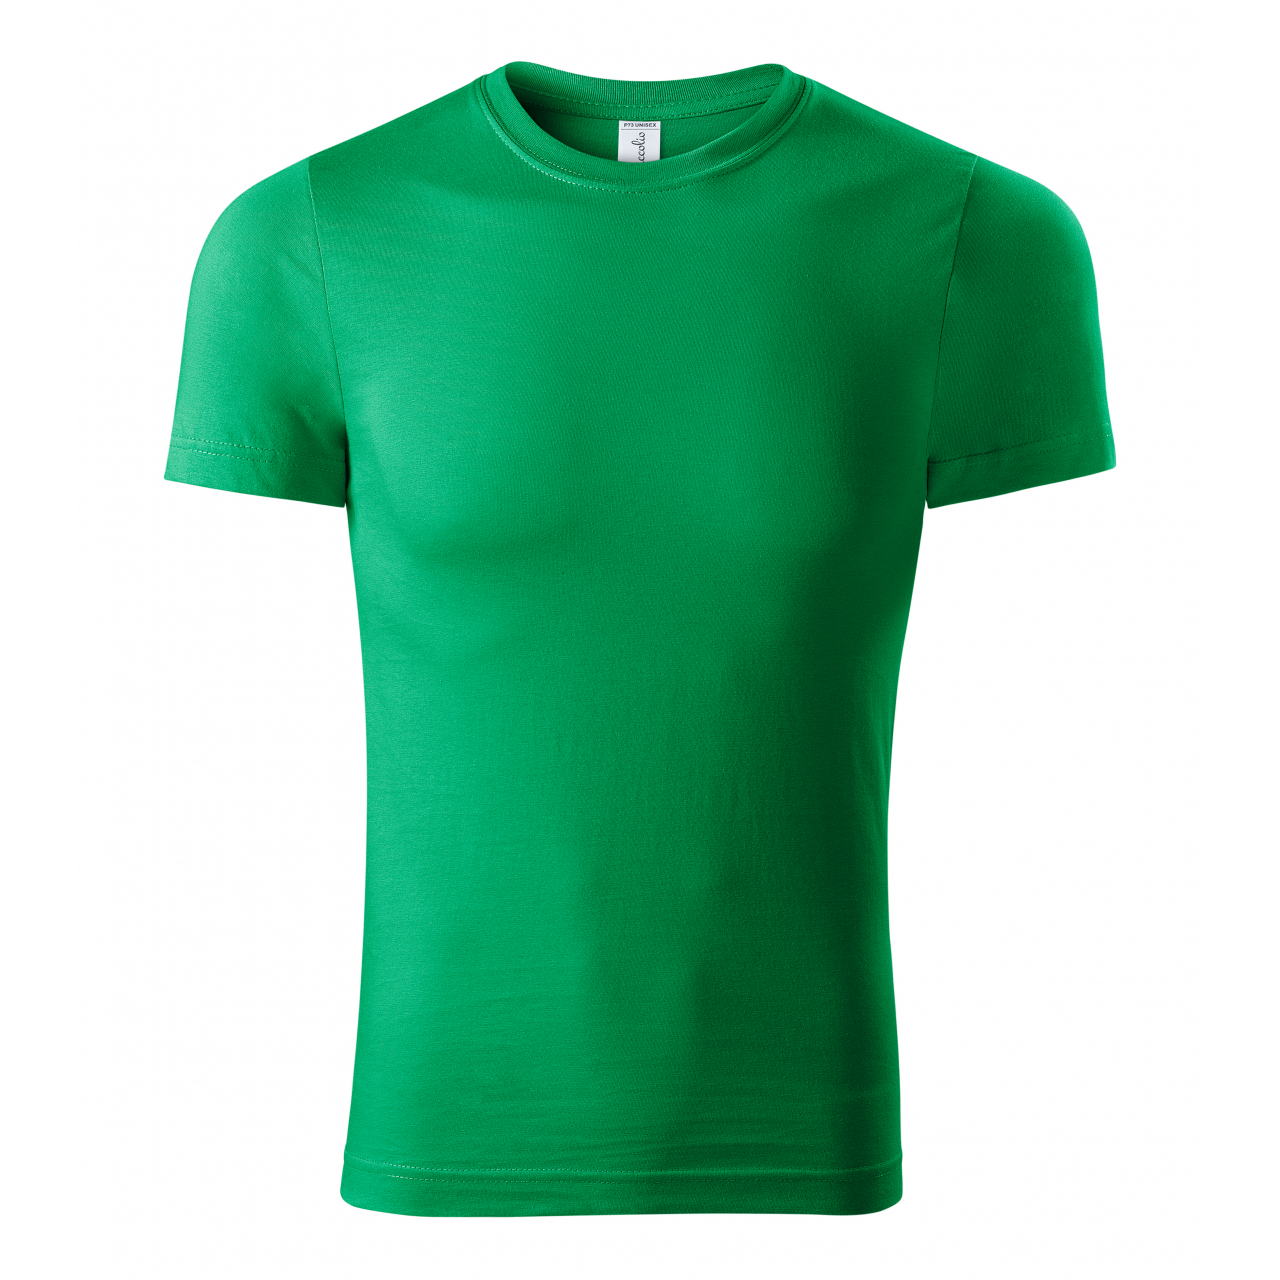 Tričko unisex Piccolio Paint - zelené, XS